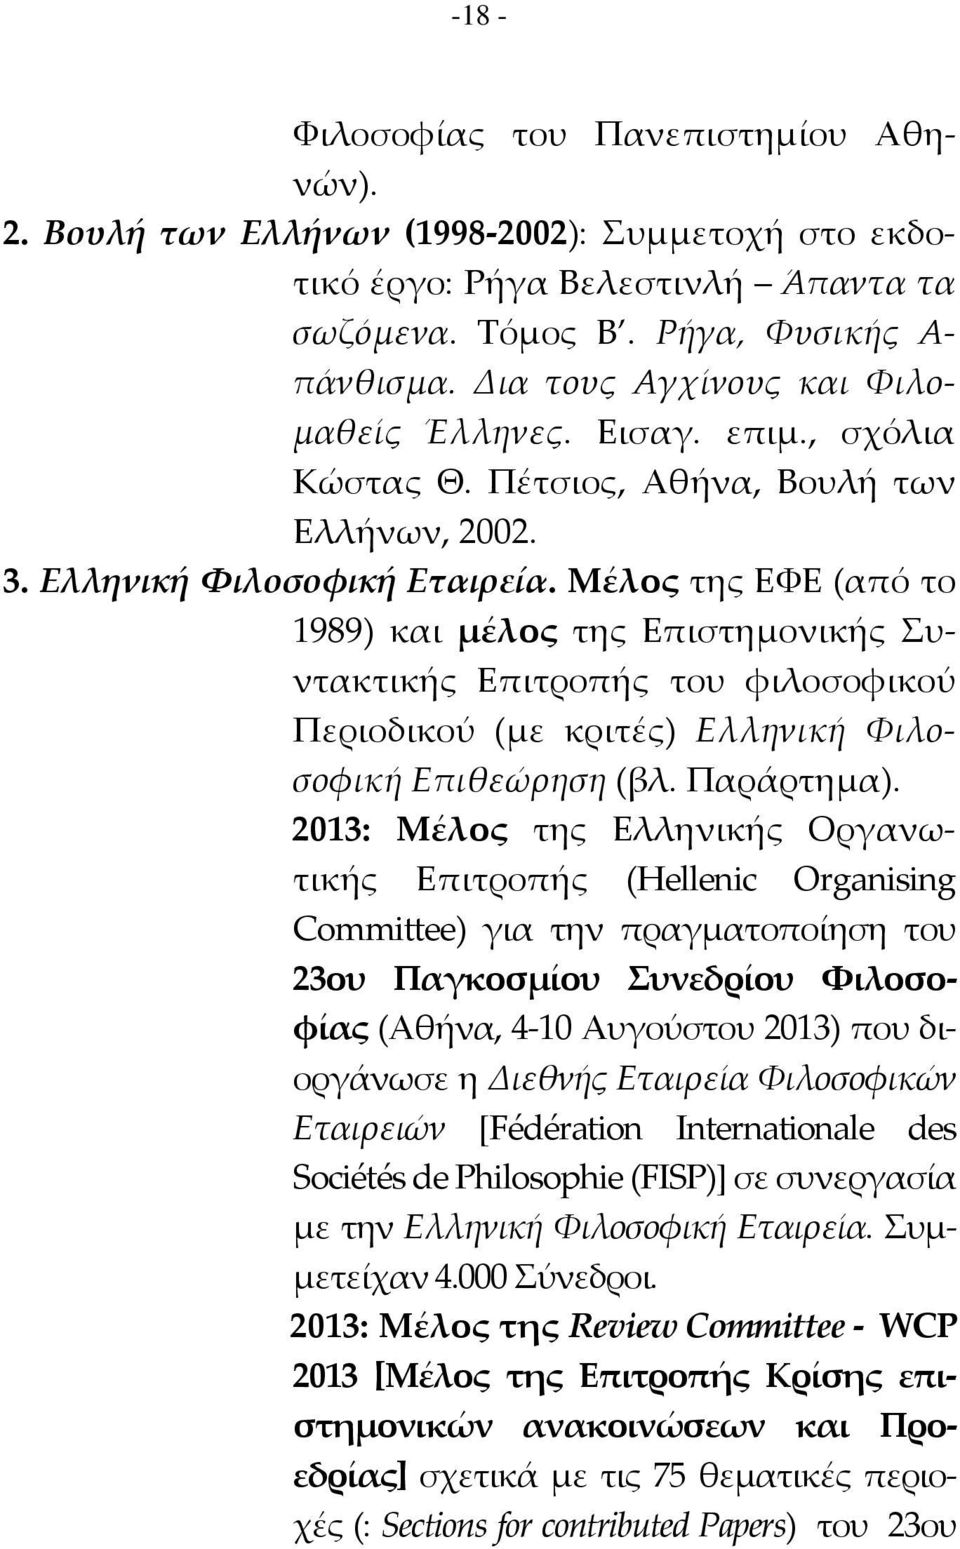 Μέλος της ΕΥΕ (από το 1989) και μέλος της Επιστημονικής υντακτικής Επιτροπής του φιλοσοφικού Περιοδικού (με κριτές) Ελληνική Υιλοσοφική Επιθεώρηση (βλ. Παράρτημα).